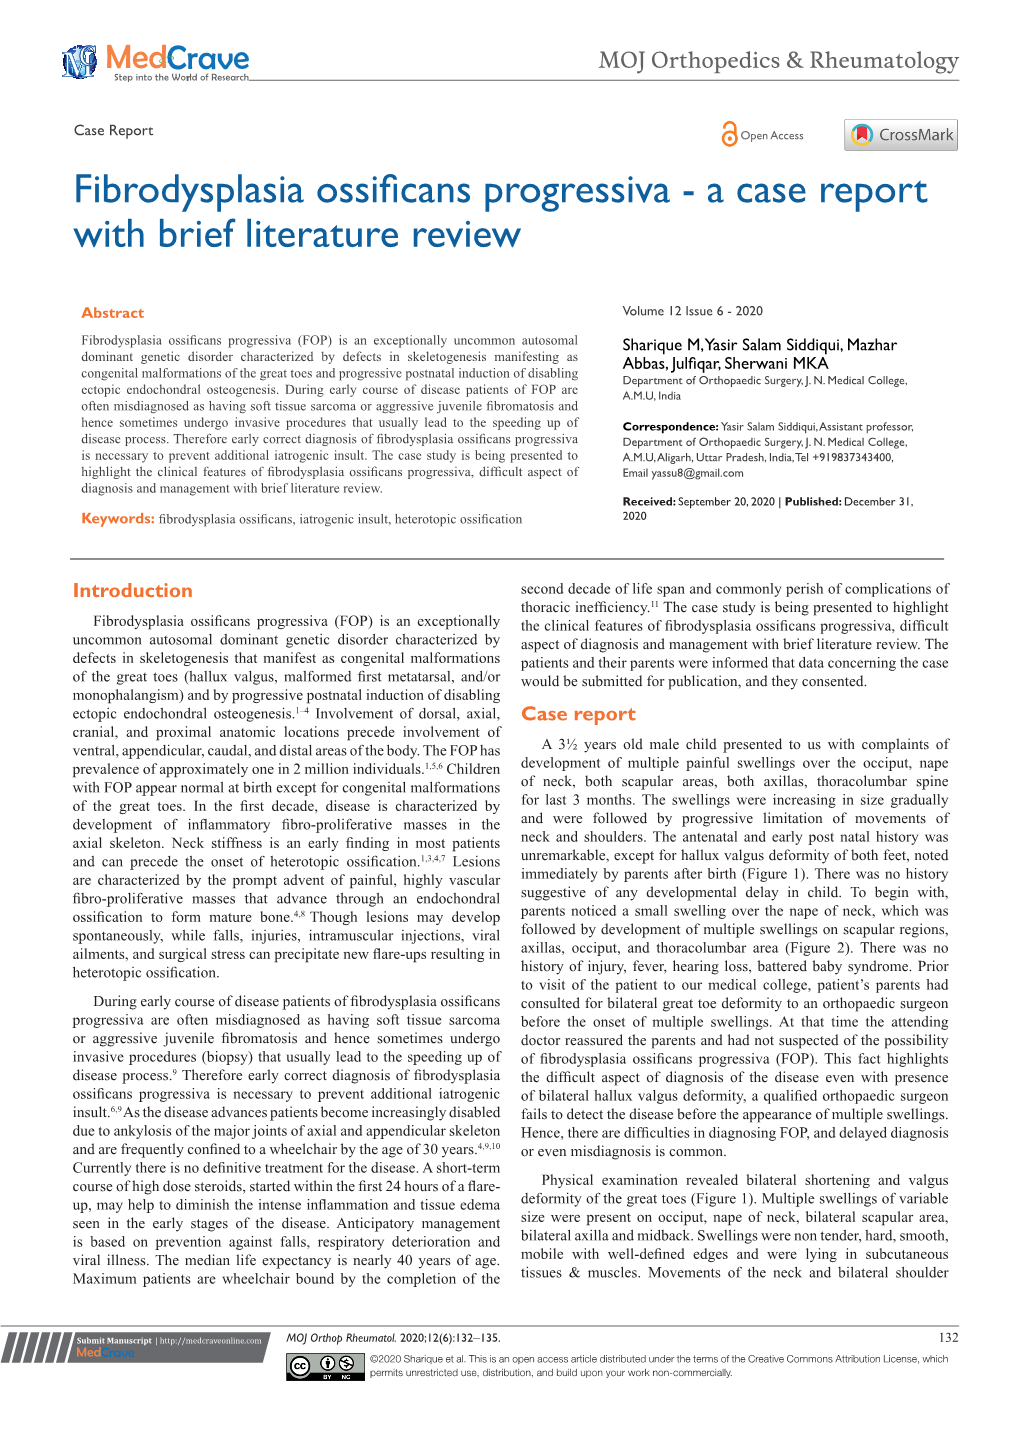 Fibrodysplasia Ossificans Progressiva - a Case Report with Brief Literature Review